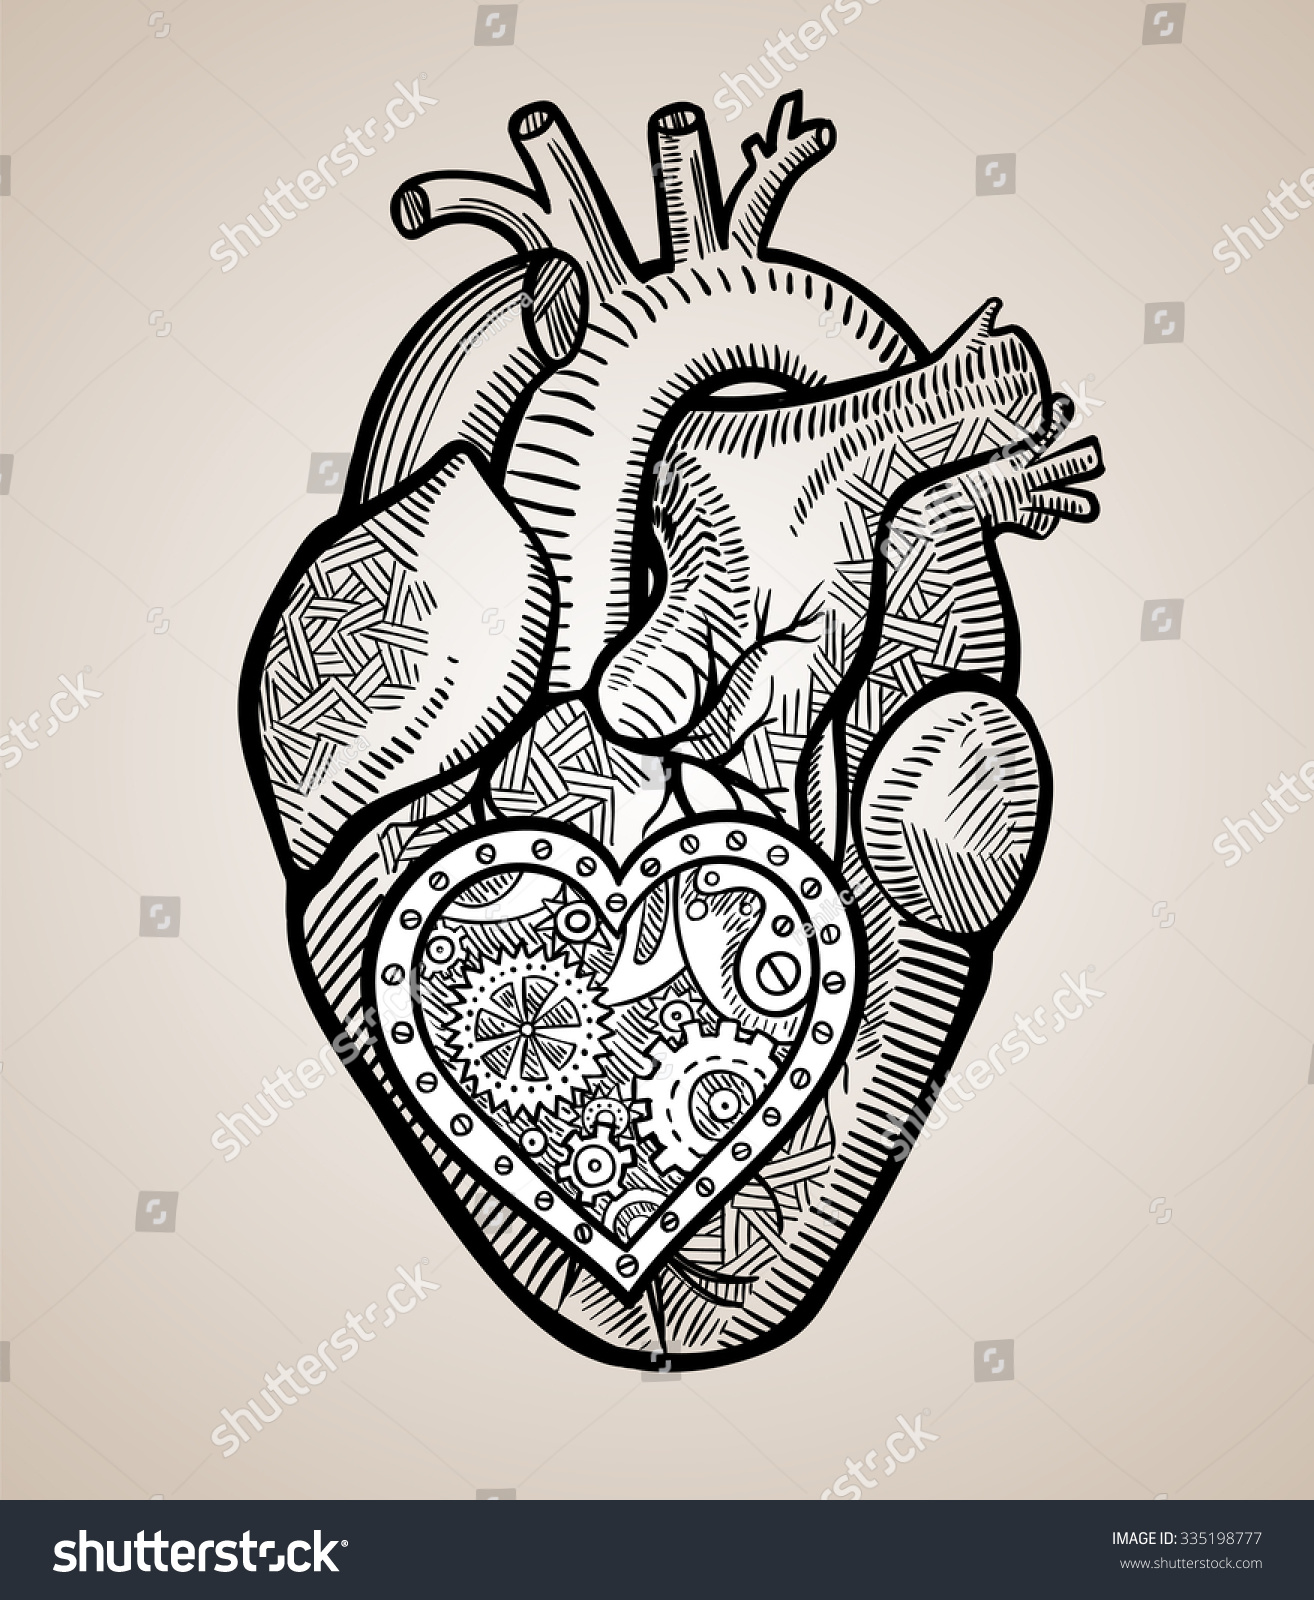 Human Heart Mechanical Heart Inside Graphic Stock Vector 335198777